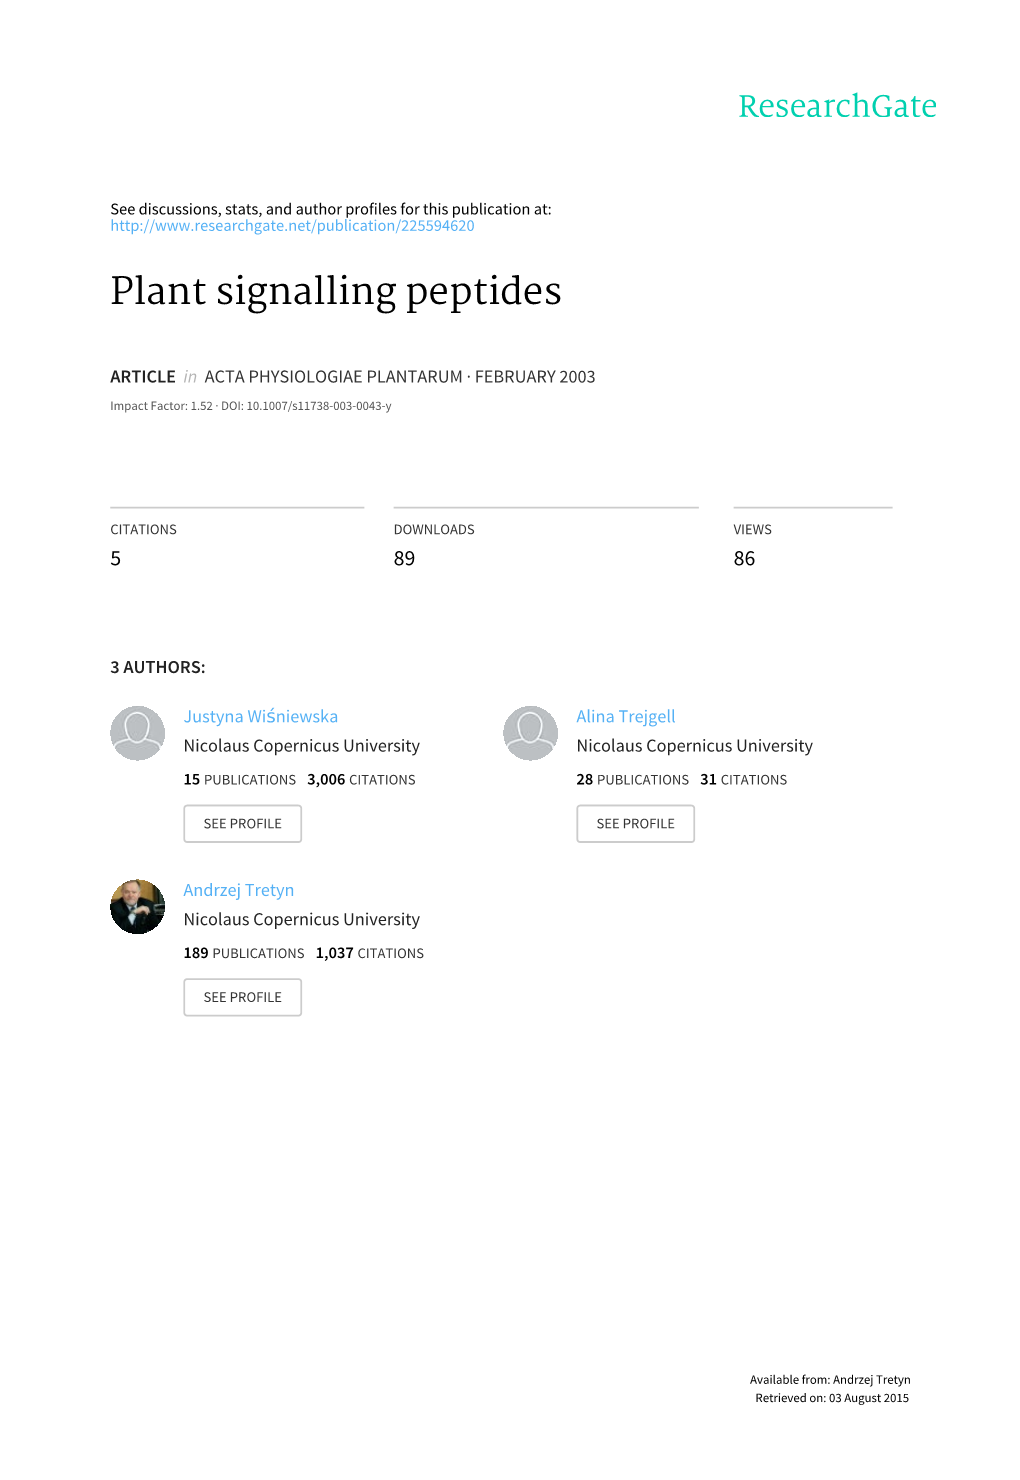 Plant Signalling Peptides